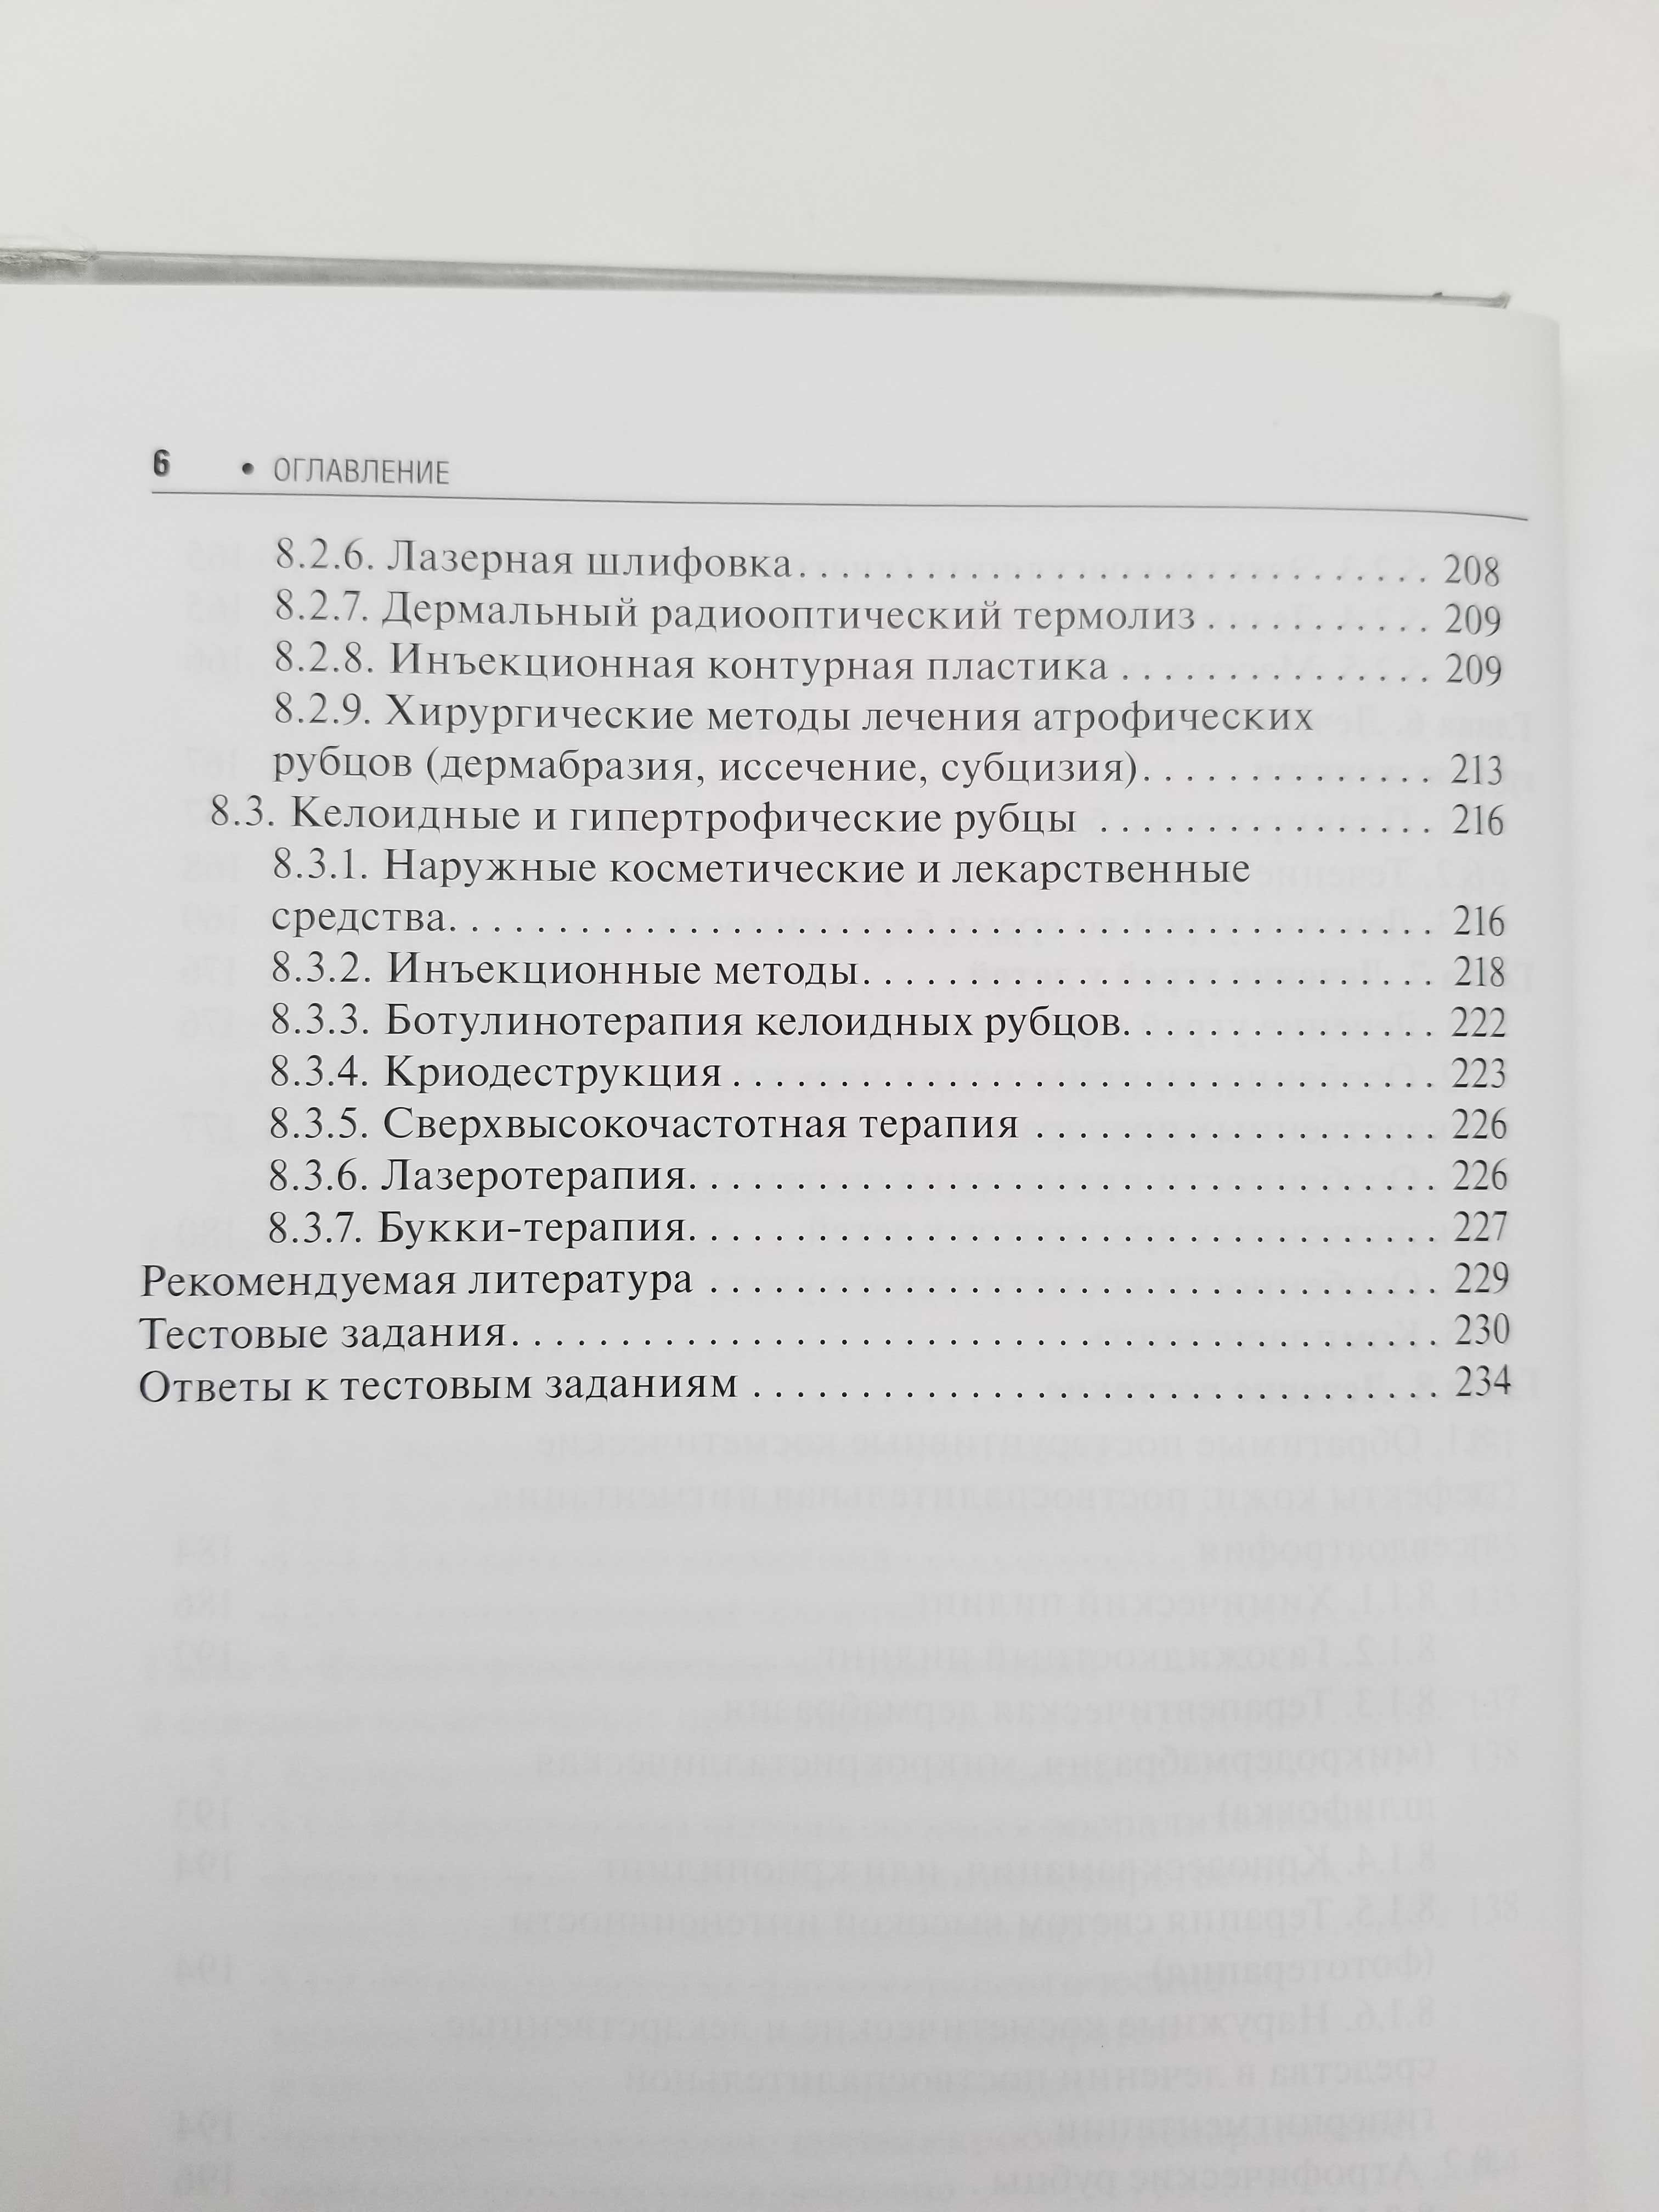 Угри учебное пособие для врачей, В. И. Альбанова, О. В. Забненкова